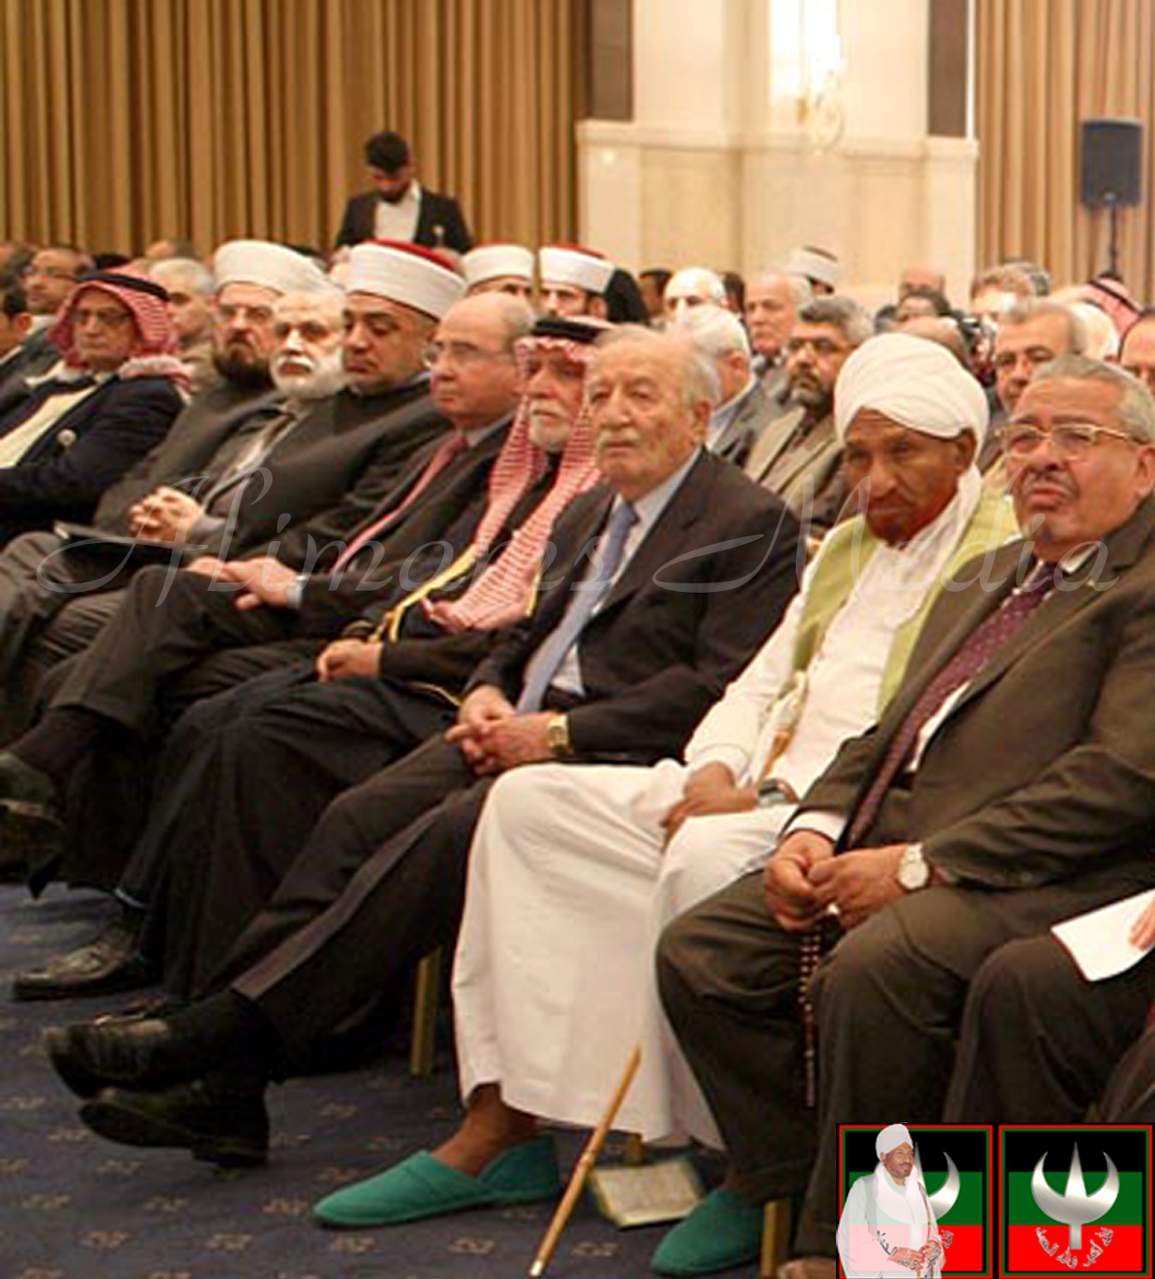 الإمام الصادق المهدي في مؤتمر المنتدى العالمي للوسطية المسلمون والعالم من المأزق الى المخرج